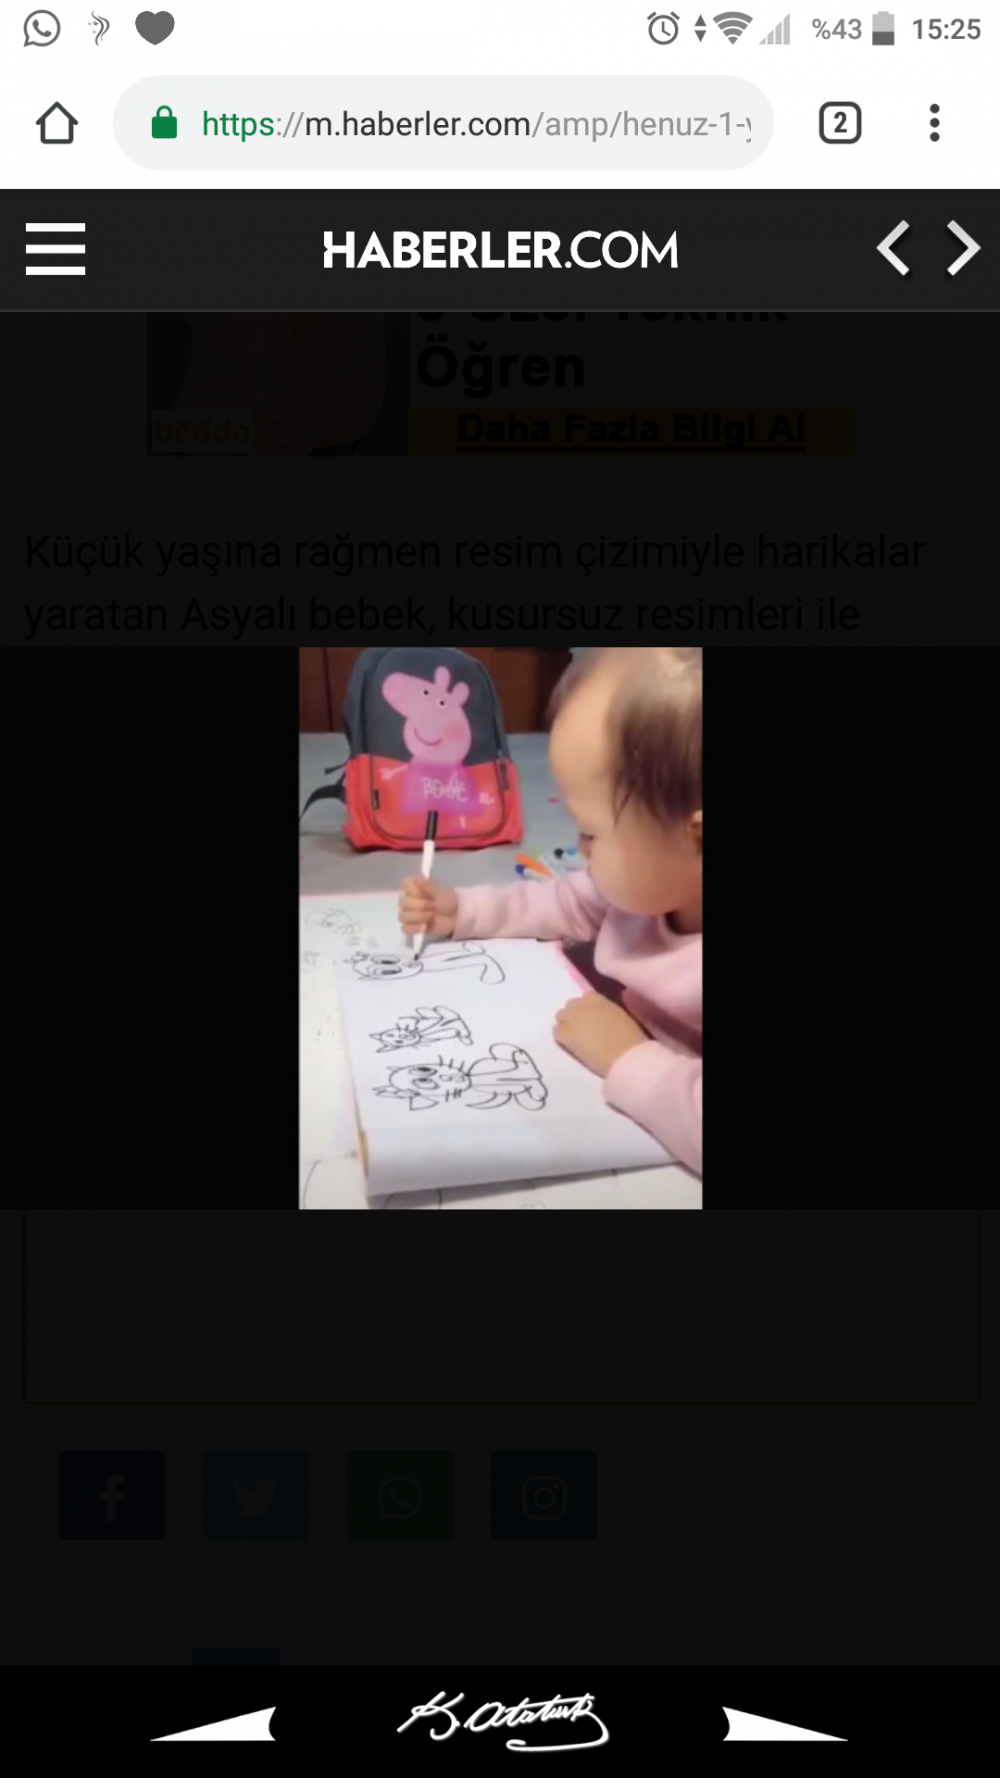 Henüz 1 yaşında olan bebek nasıl çizimler yapıyor inanmayacaksınız?